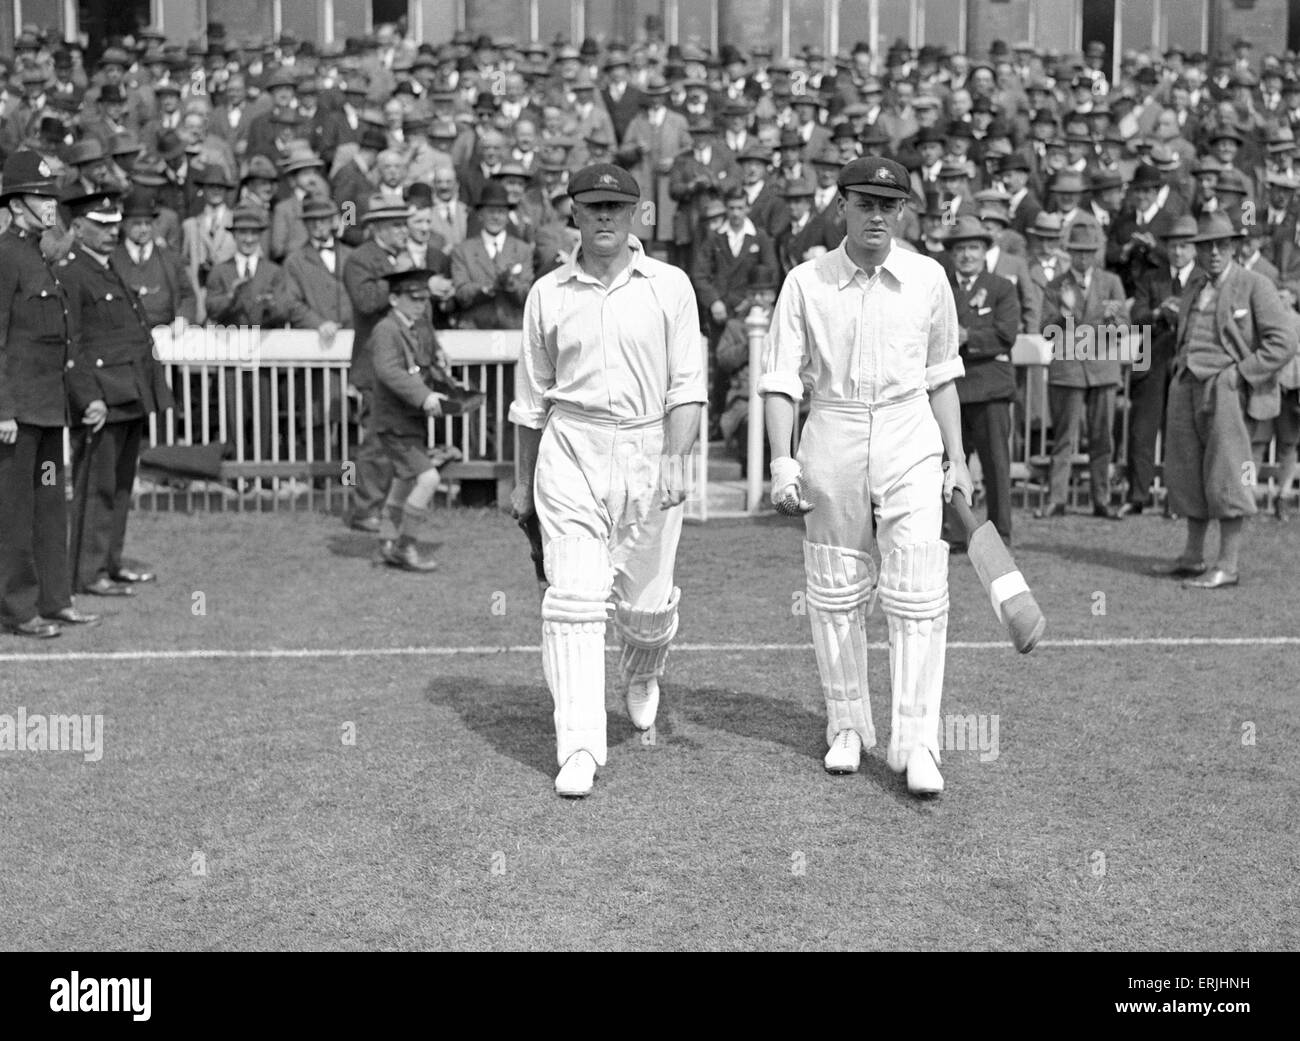 Australien-Tour von Großbritannien für die Asche. England V Australien 4. Testspiel im Old Trafford. Australische Kricketspieler Warren Bardsley und Bill Woodfull. 27. Juli 1926. Stockfoto